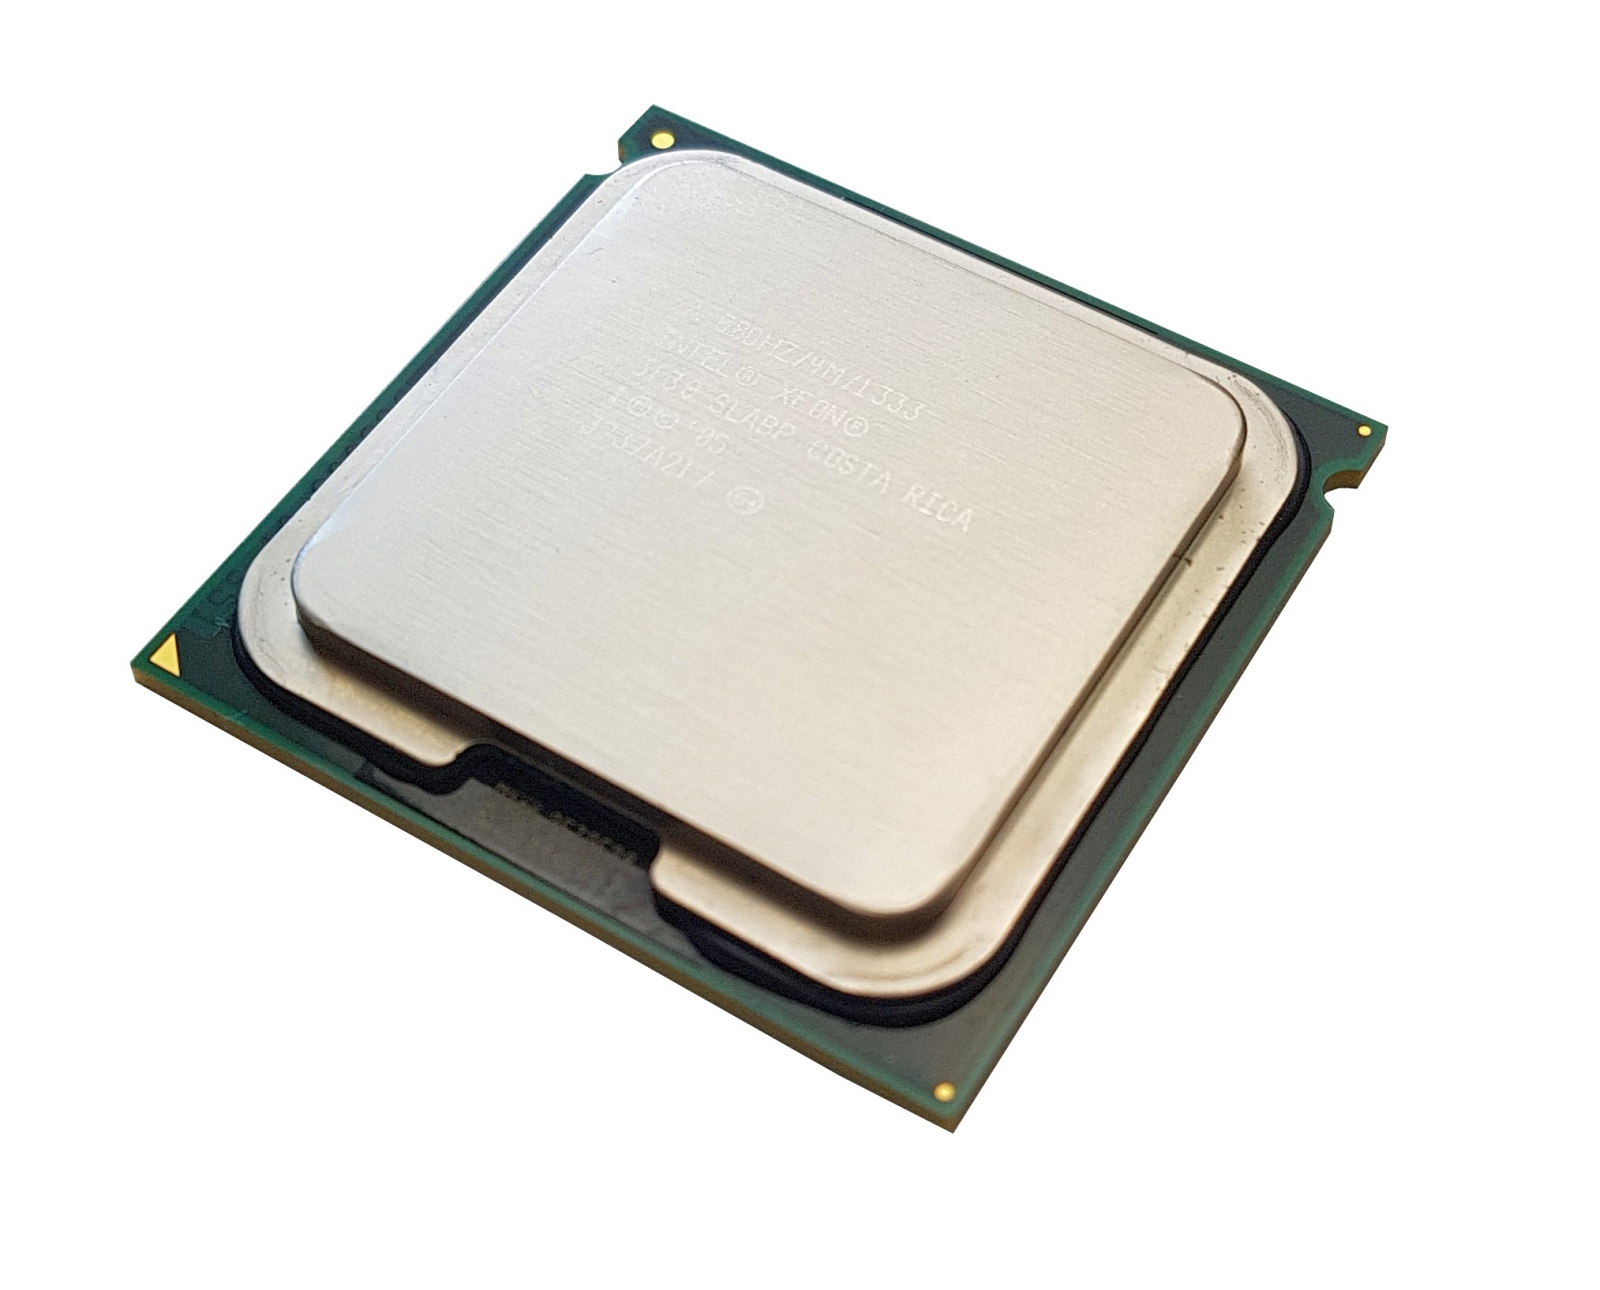 Процессор Intel Xeon 5130, 2 ядра, 2,00 ГГц, LGA771